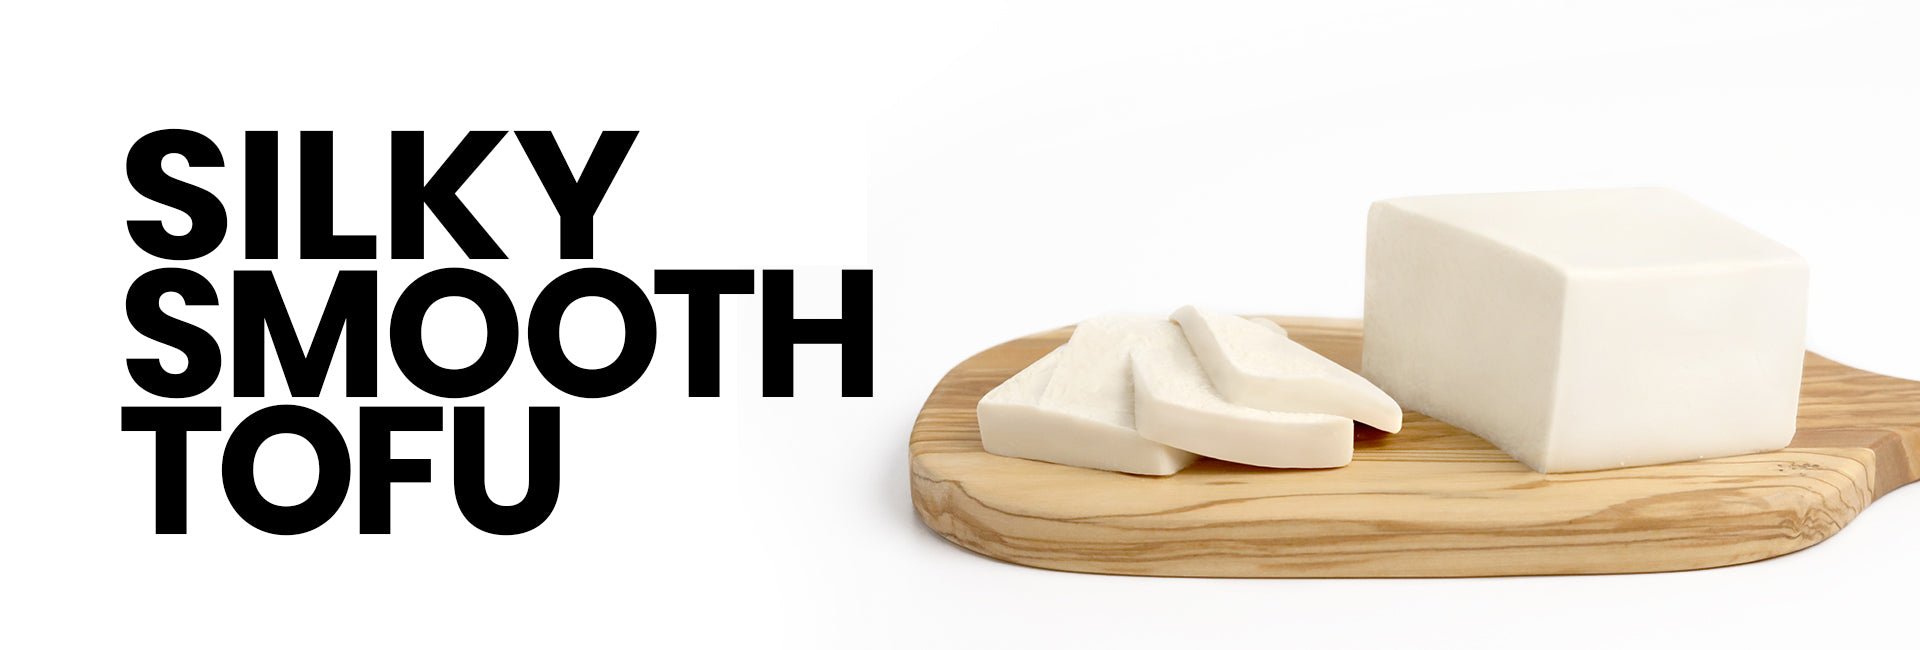 Mori-Nu Silken Tofu touts a silky smooth texture.